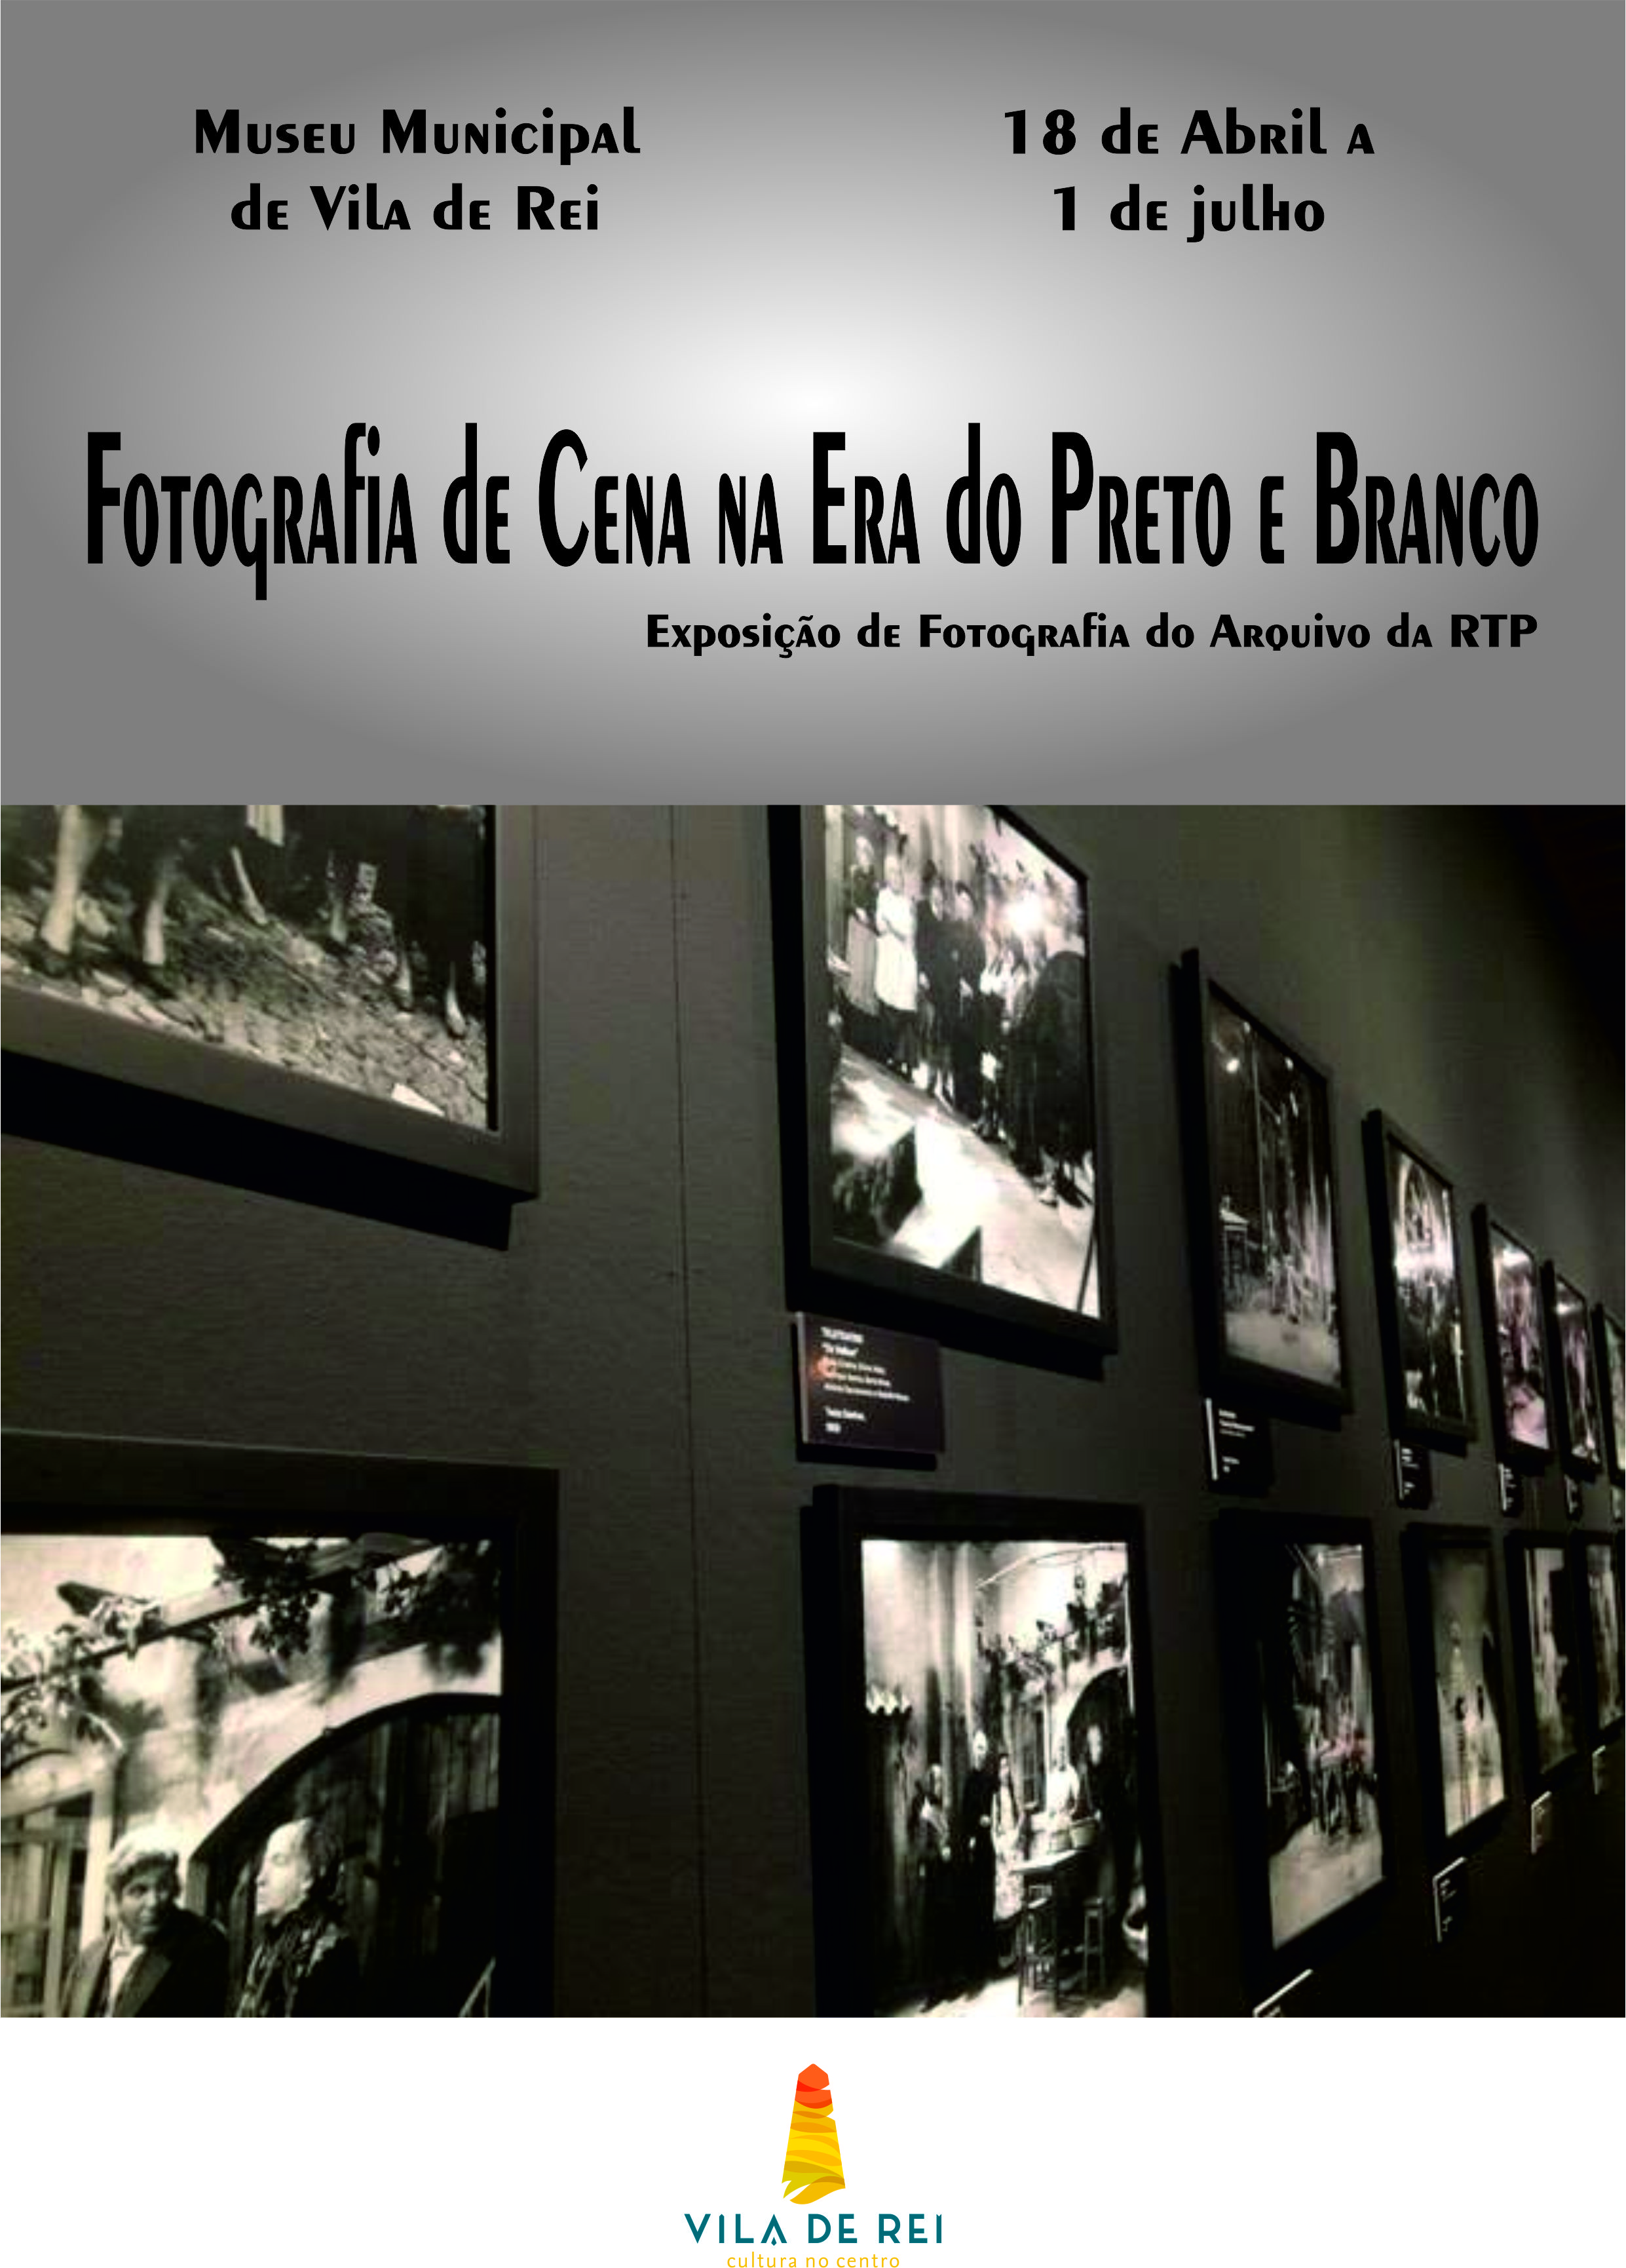 Vila de Rei: “Fotografia de Cena na Era do Preto e Branco”: Exposição do Arquivo da RTP no Museu Municipal